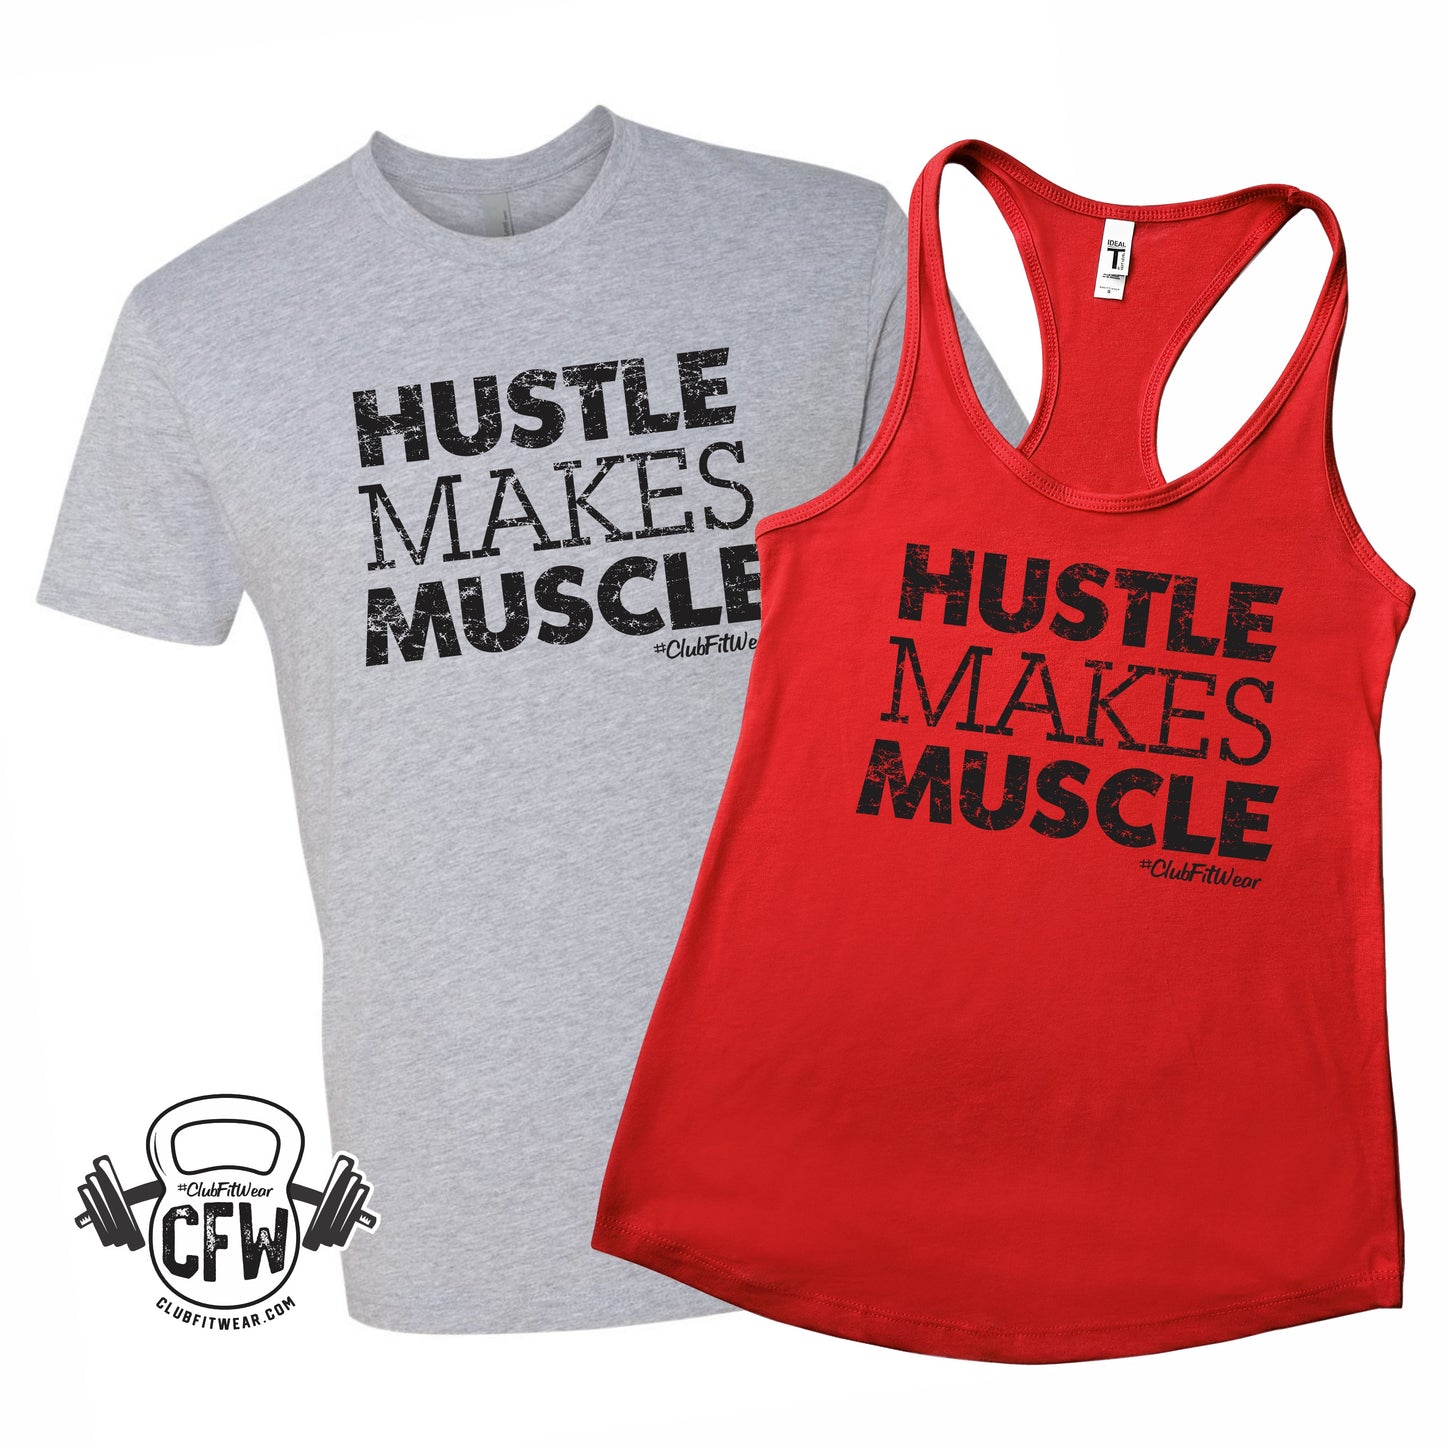 Hustle makes Muscle